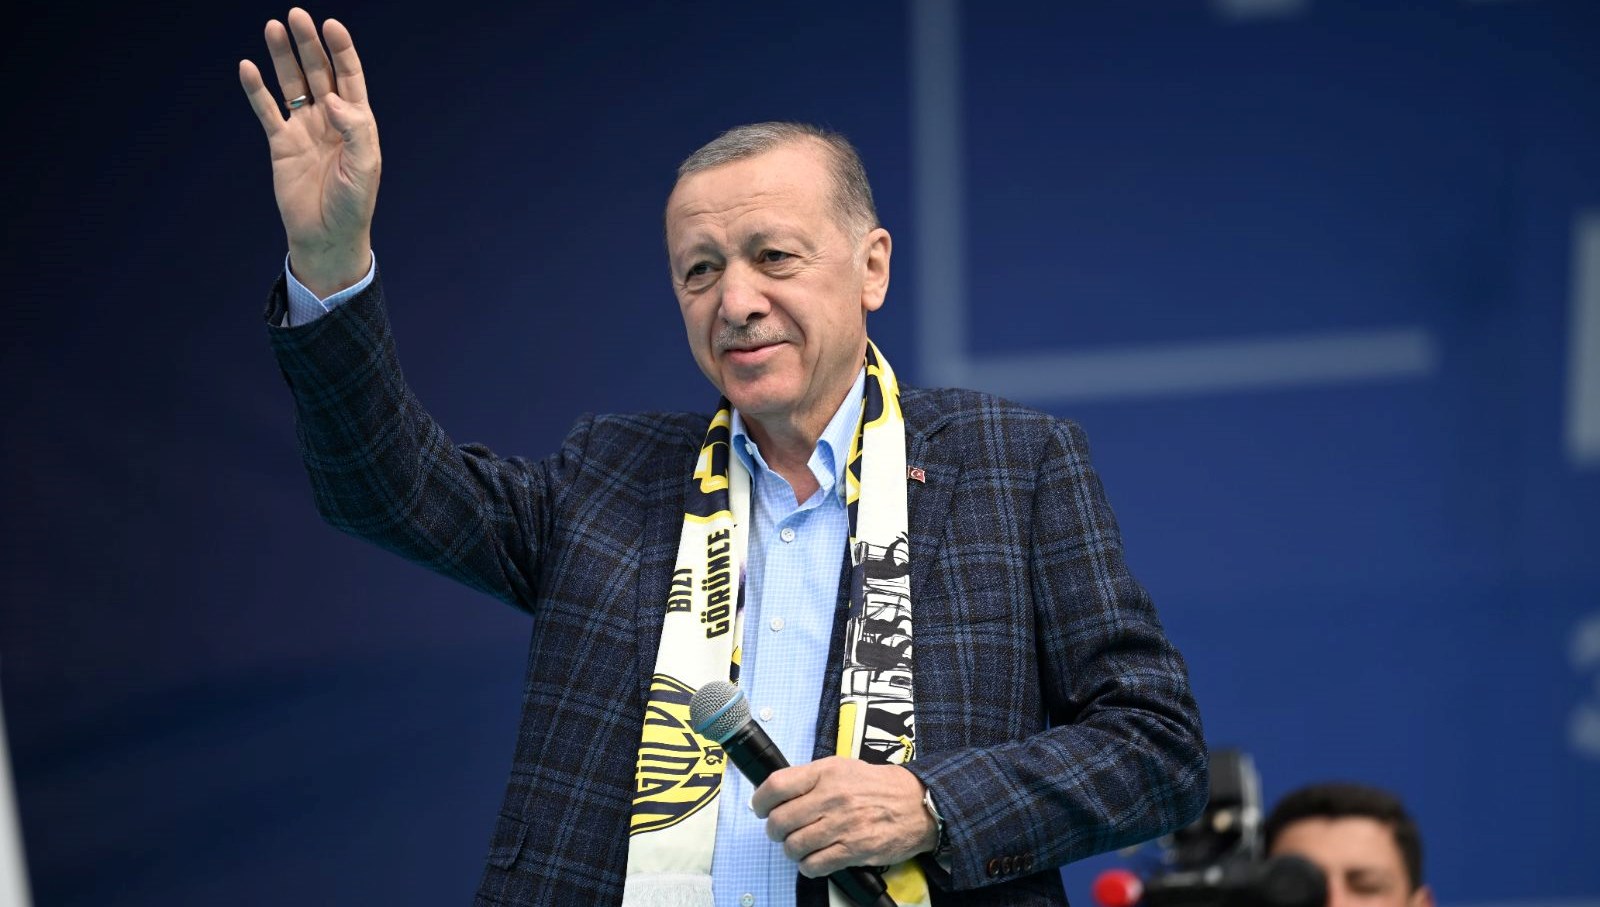 Cumhurbaşkanı Erdoğan’dan Kılıçdaroğlu’na 300 milyar dolar yansısı